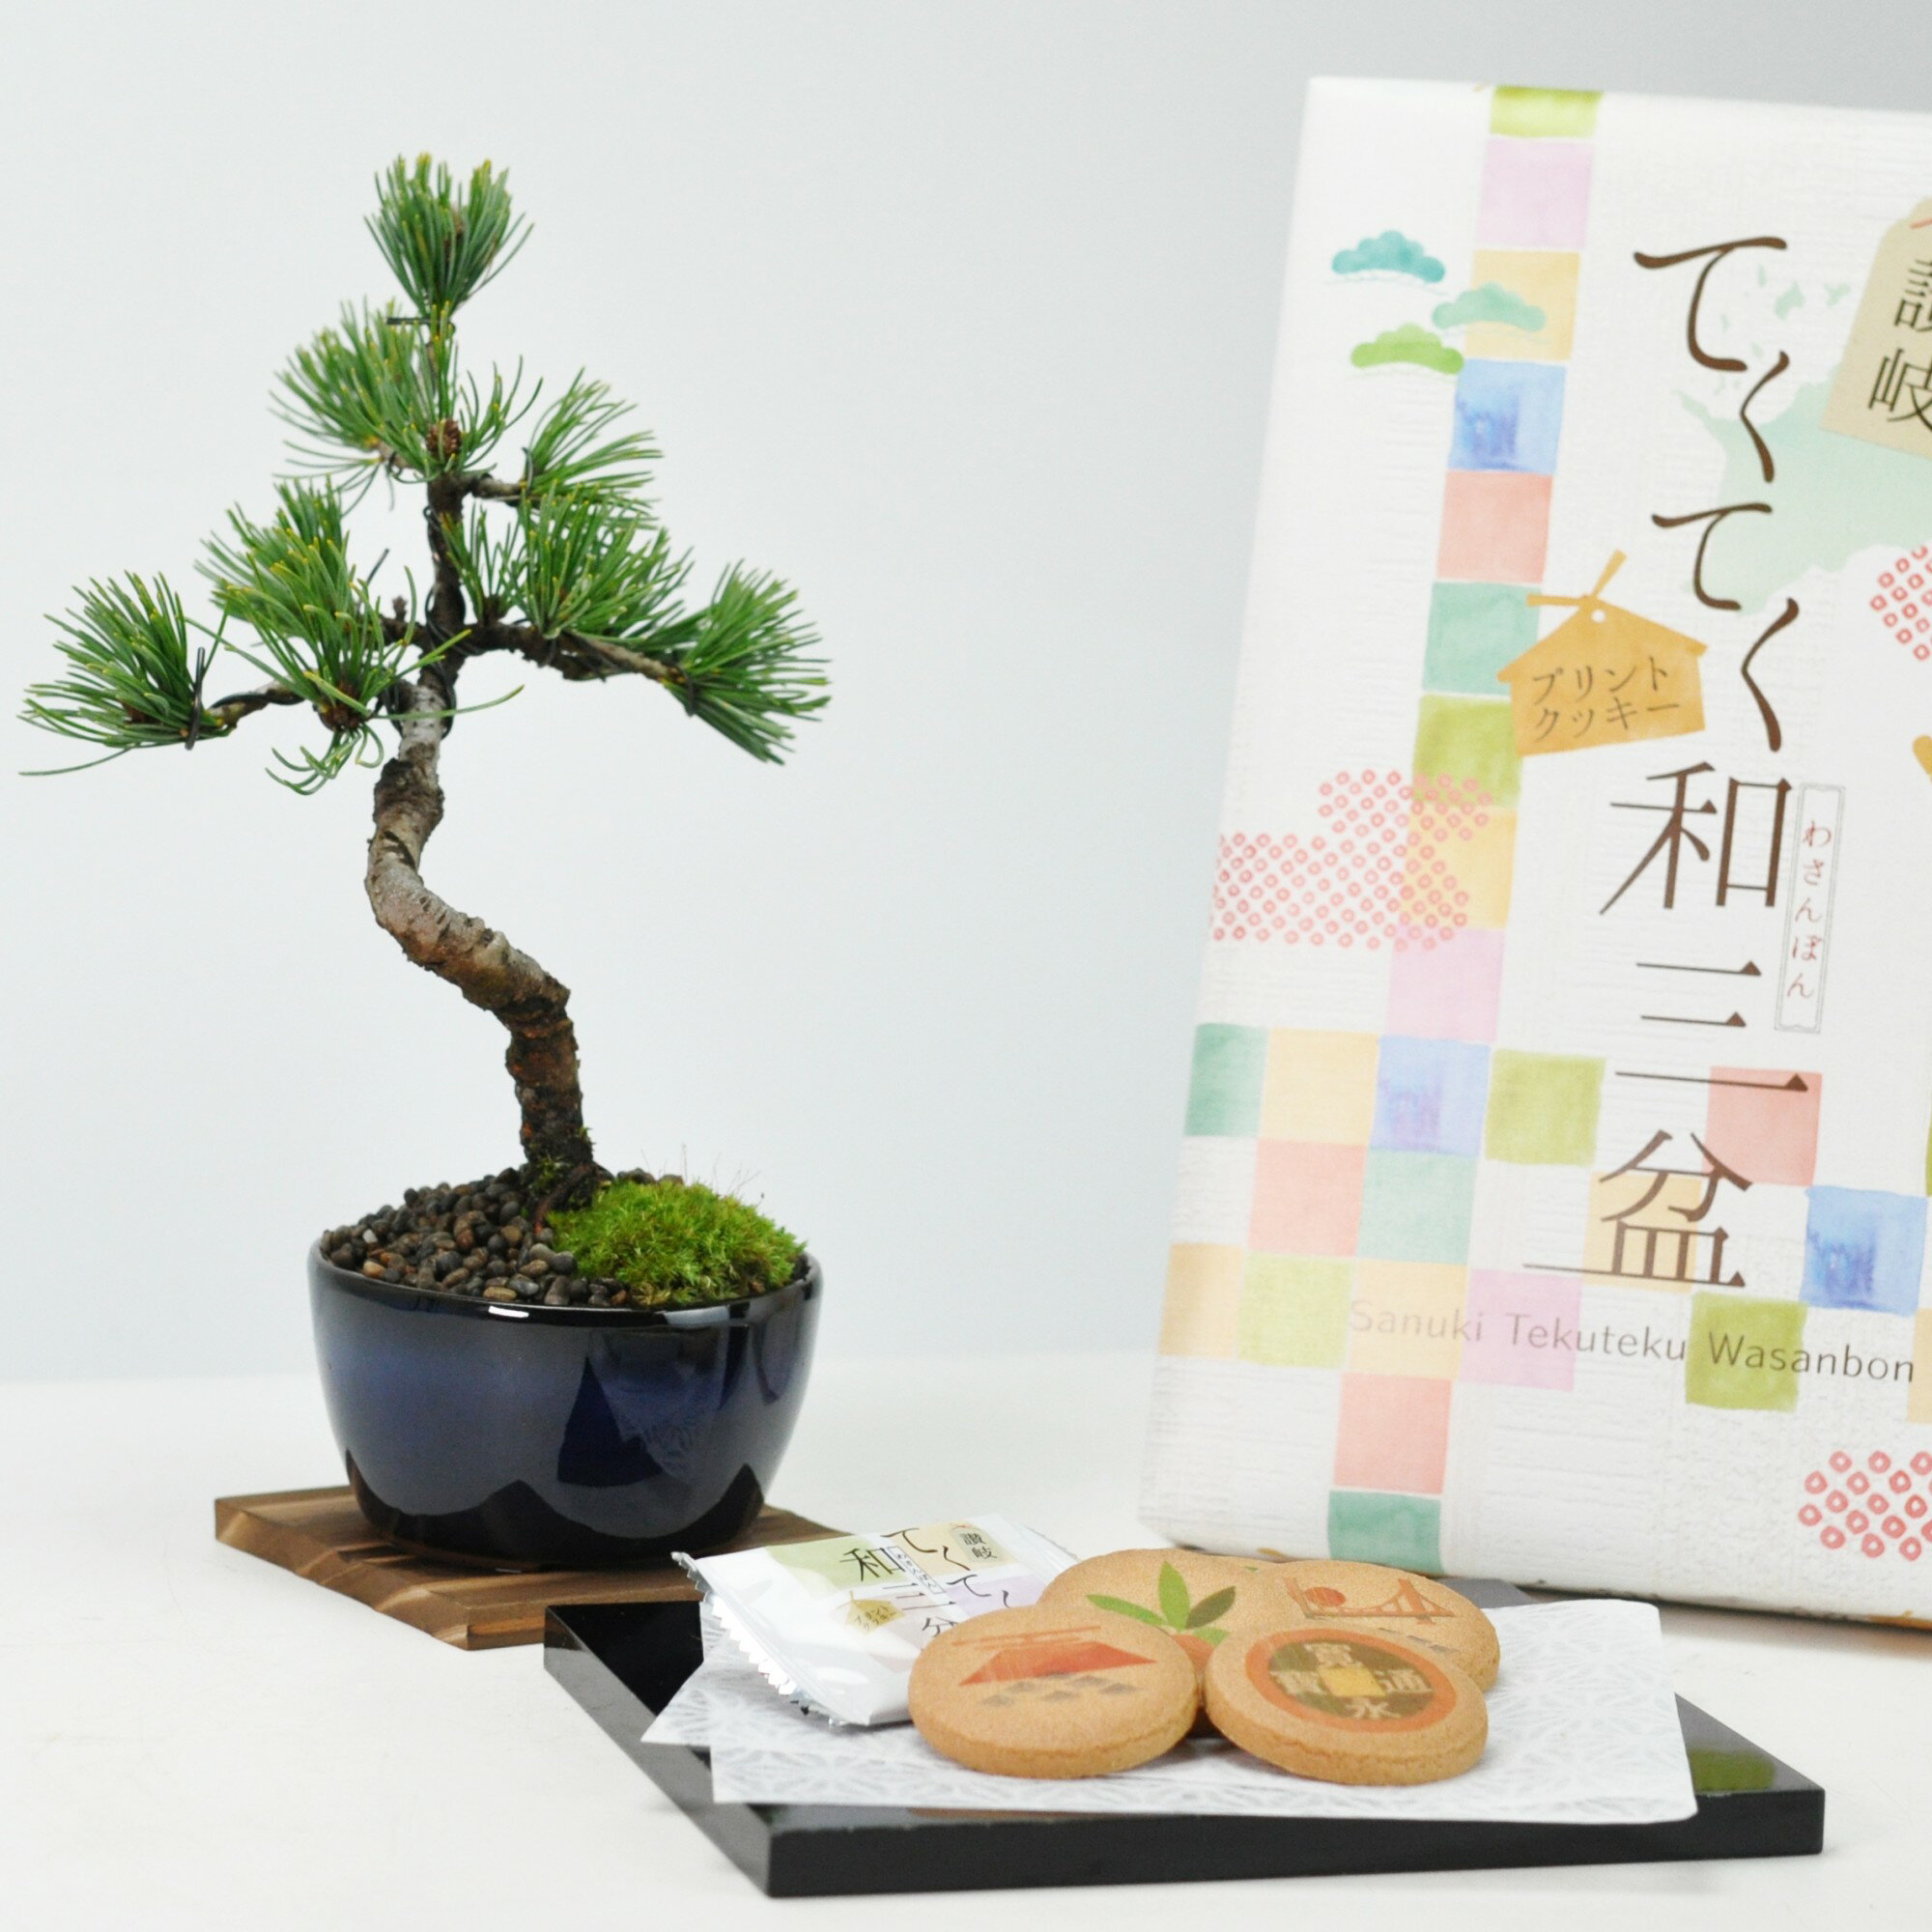 盆栽 ミニ盆栽 和三盆クッキーとミニ五葉松 丸小鉢 ギフト ギフト プレゼント 鉢植え スイーツ 焼き菓子 bonsai 父の日